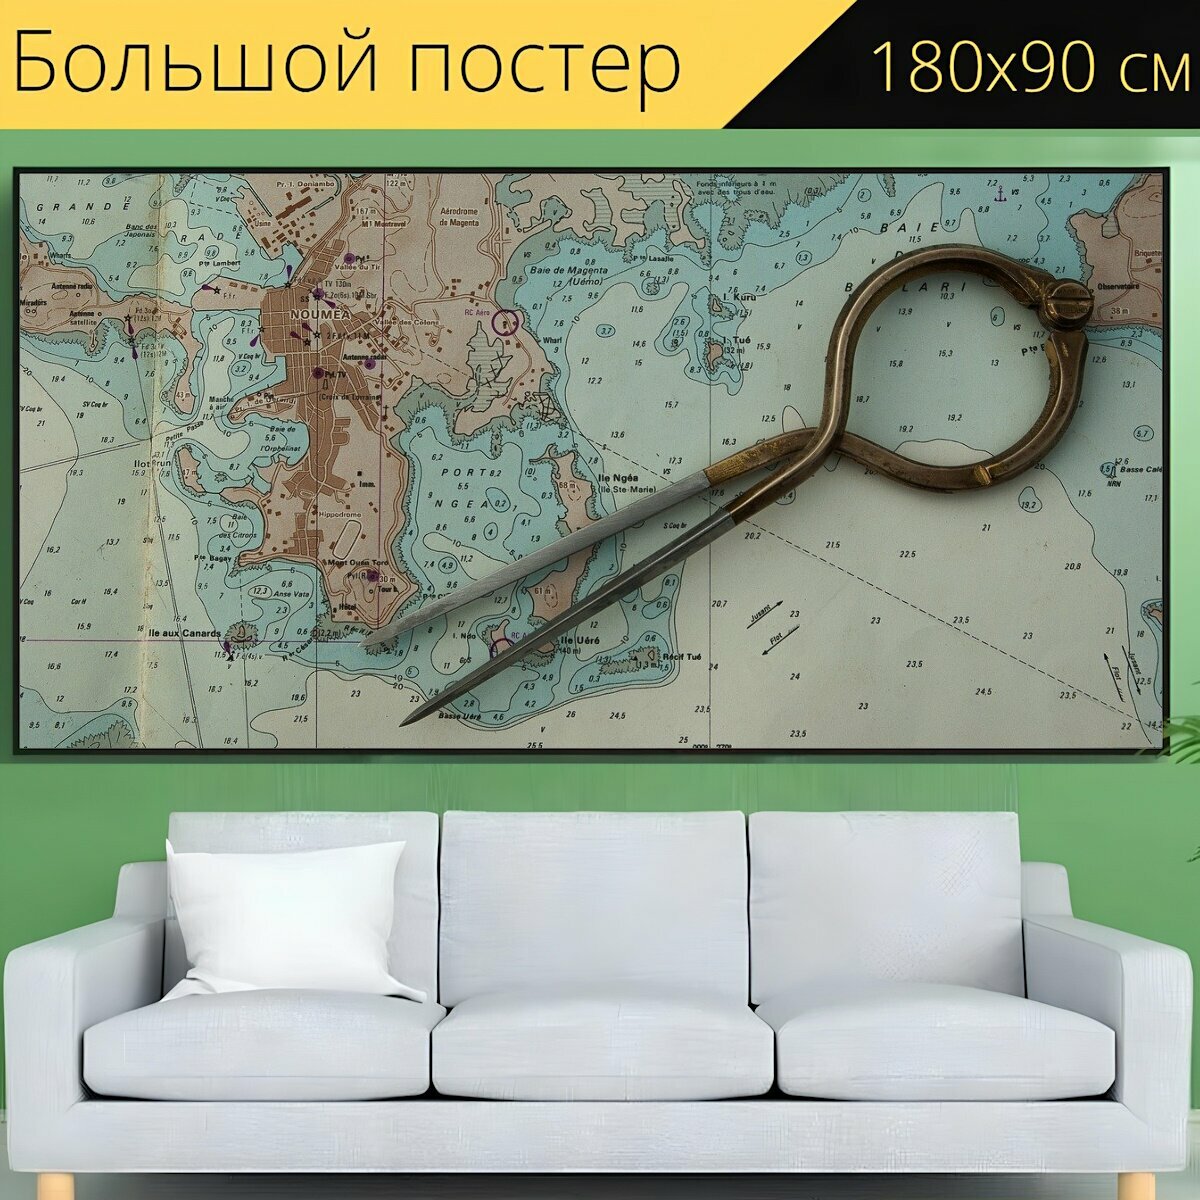 Большой постер "Навигационная карта, компас, навигация" 180 x 90 см. для интерьера